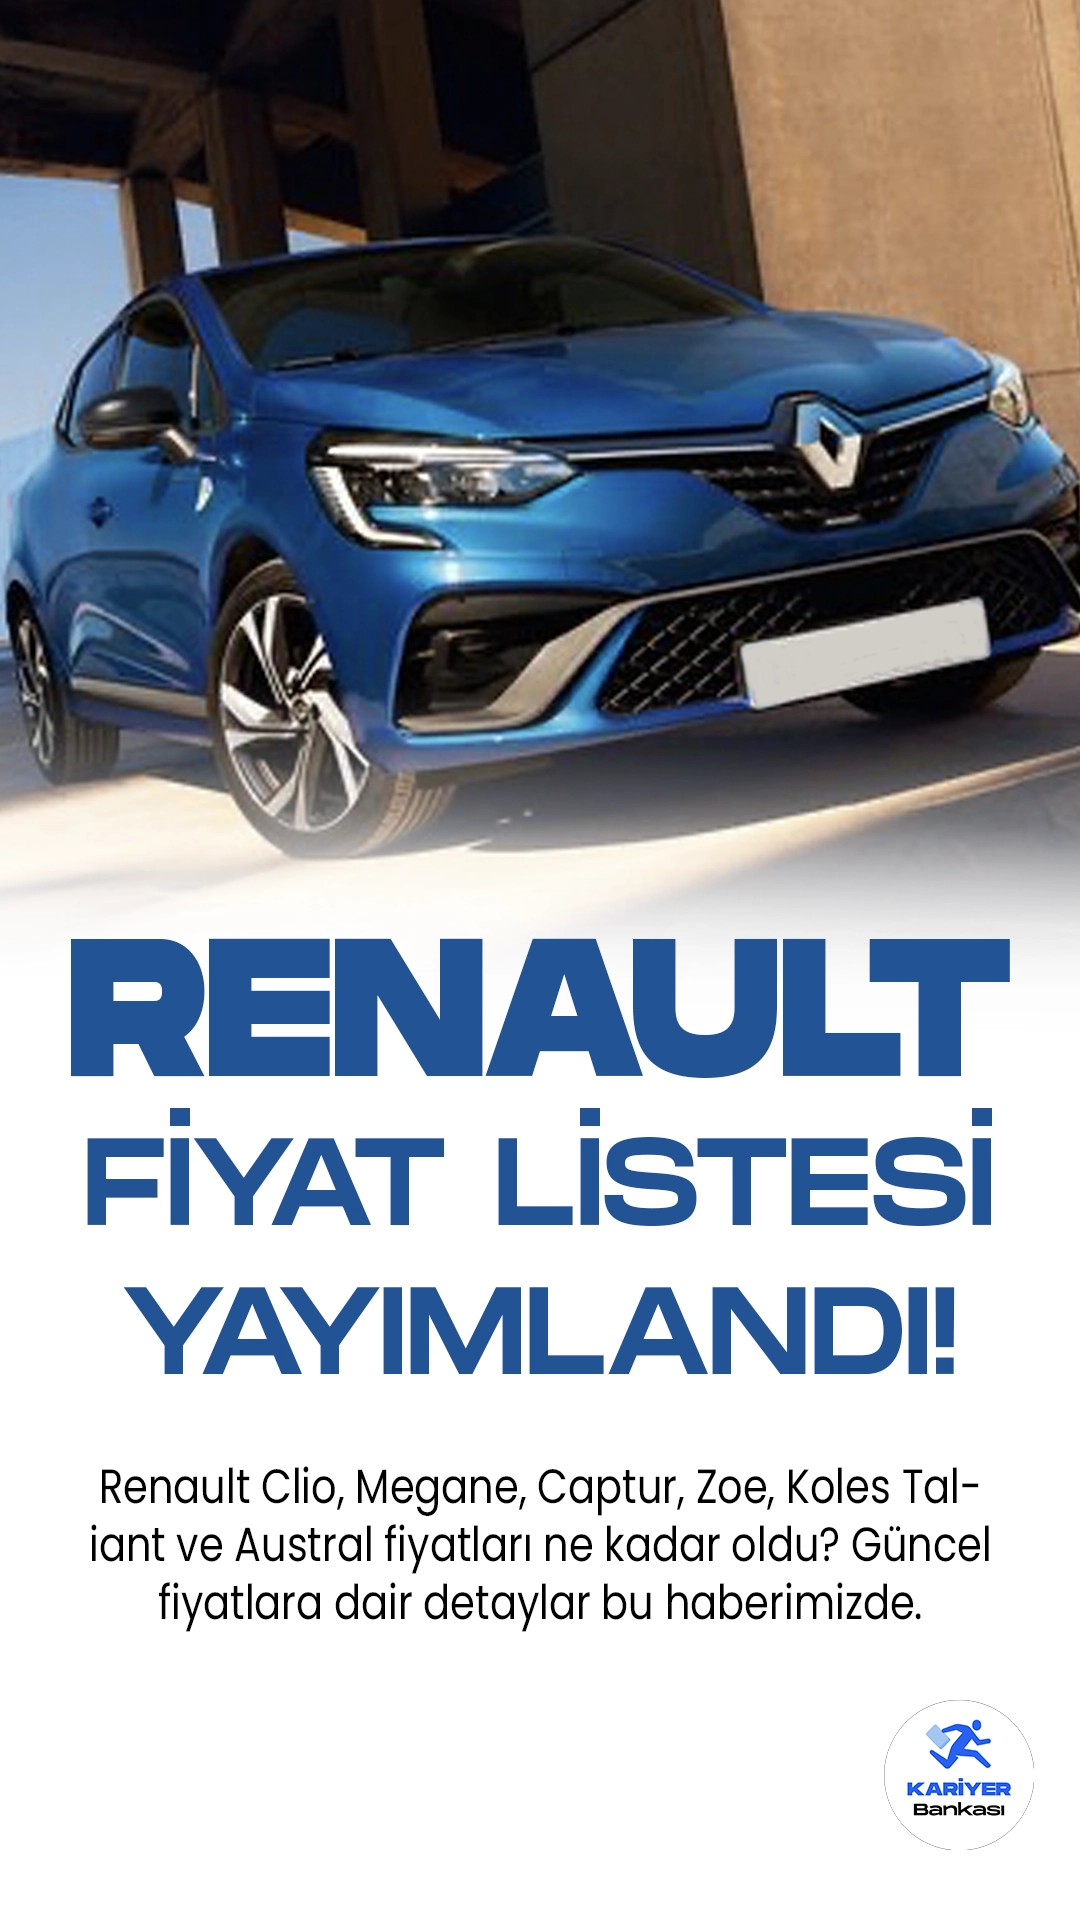 Renault Temmuz 2023 Fiyat Listesi Yayımlandı! Türkiye'de en çok tercih edilen araç markaları arasında ilk sıralarda yer alan Renault, her ay fiyat listelerini güncellemeye devam ediyor. Modern tasarımı, konforlu sürüşü ve uygun fiyatlı olması nedeniyle araç sürücülerinin ilk favorilerinden olmayı sürdürüyor.